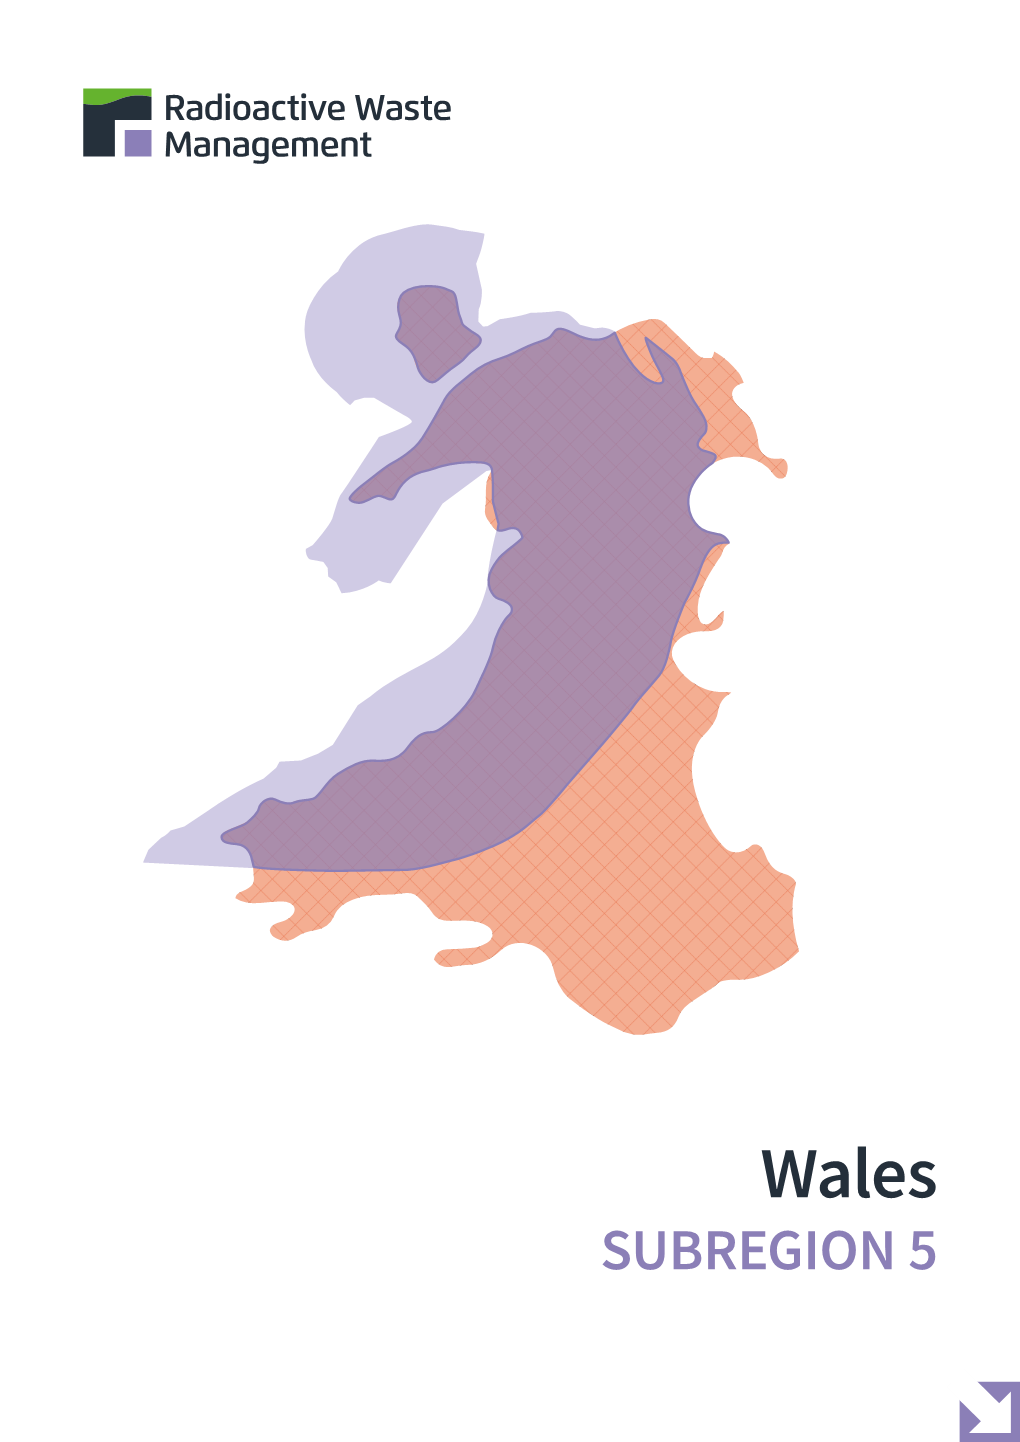 RWM Wales Subregion 5